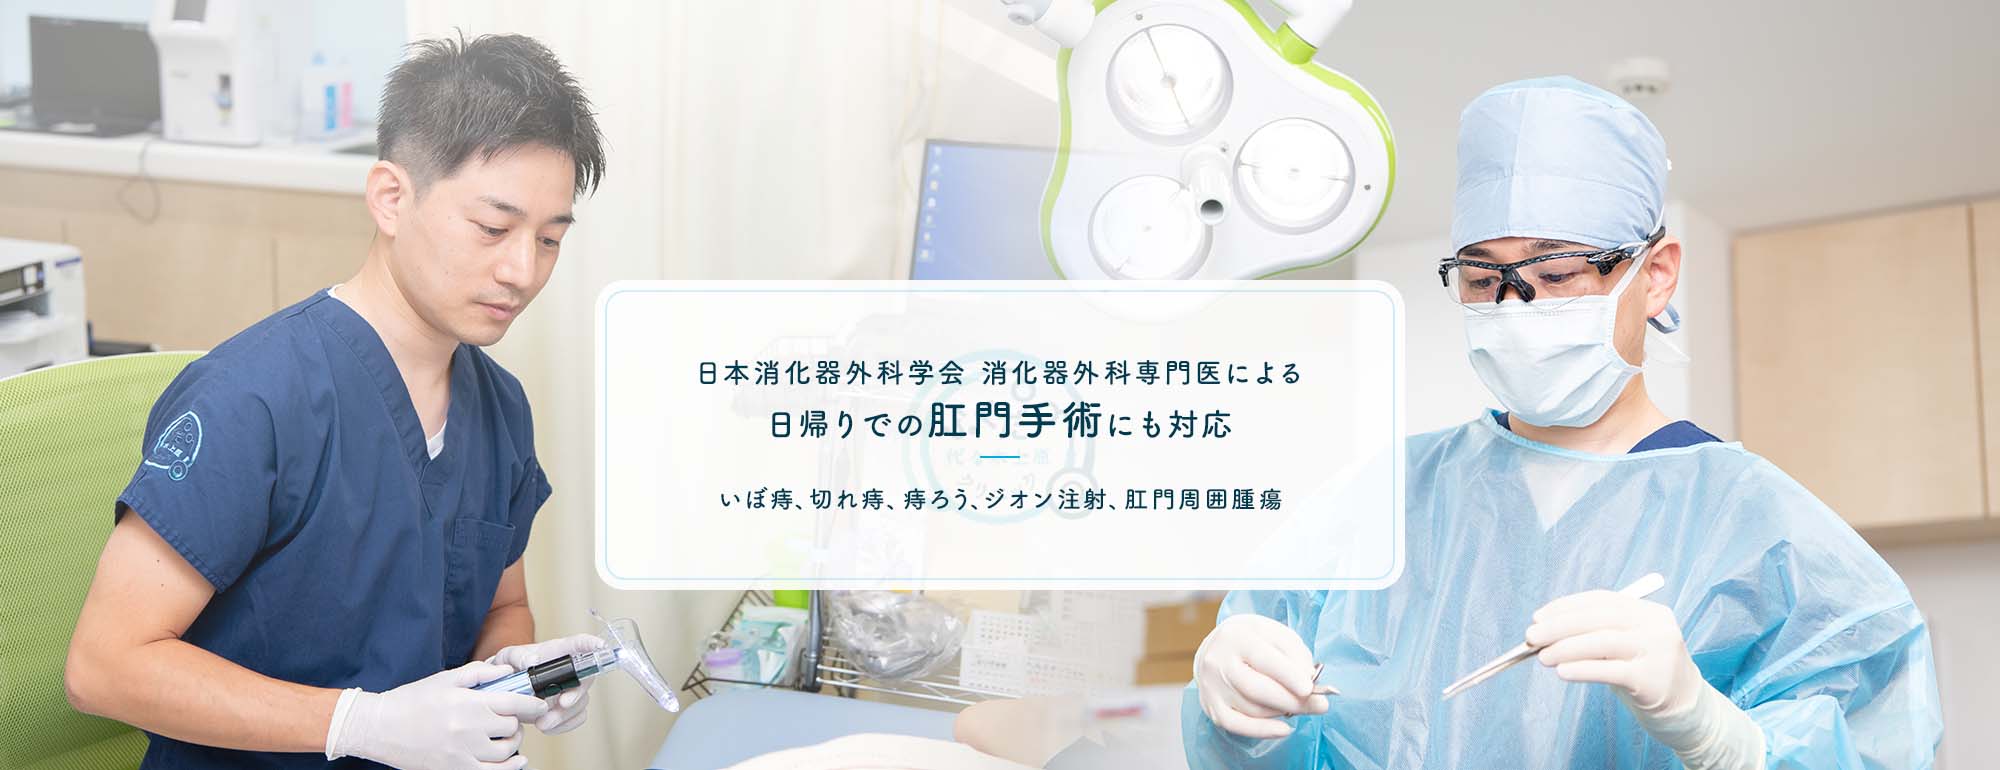 日本大腸肛門学専門医による 日帰りでの肛門手術にも対応 いぼ痔、切れ痔、痔ろう、ジオン注射、肛門周囲腫瘍